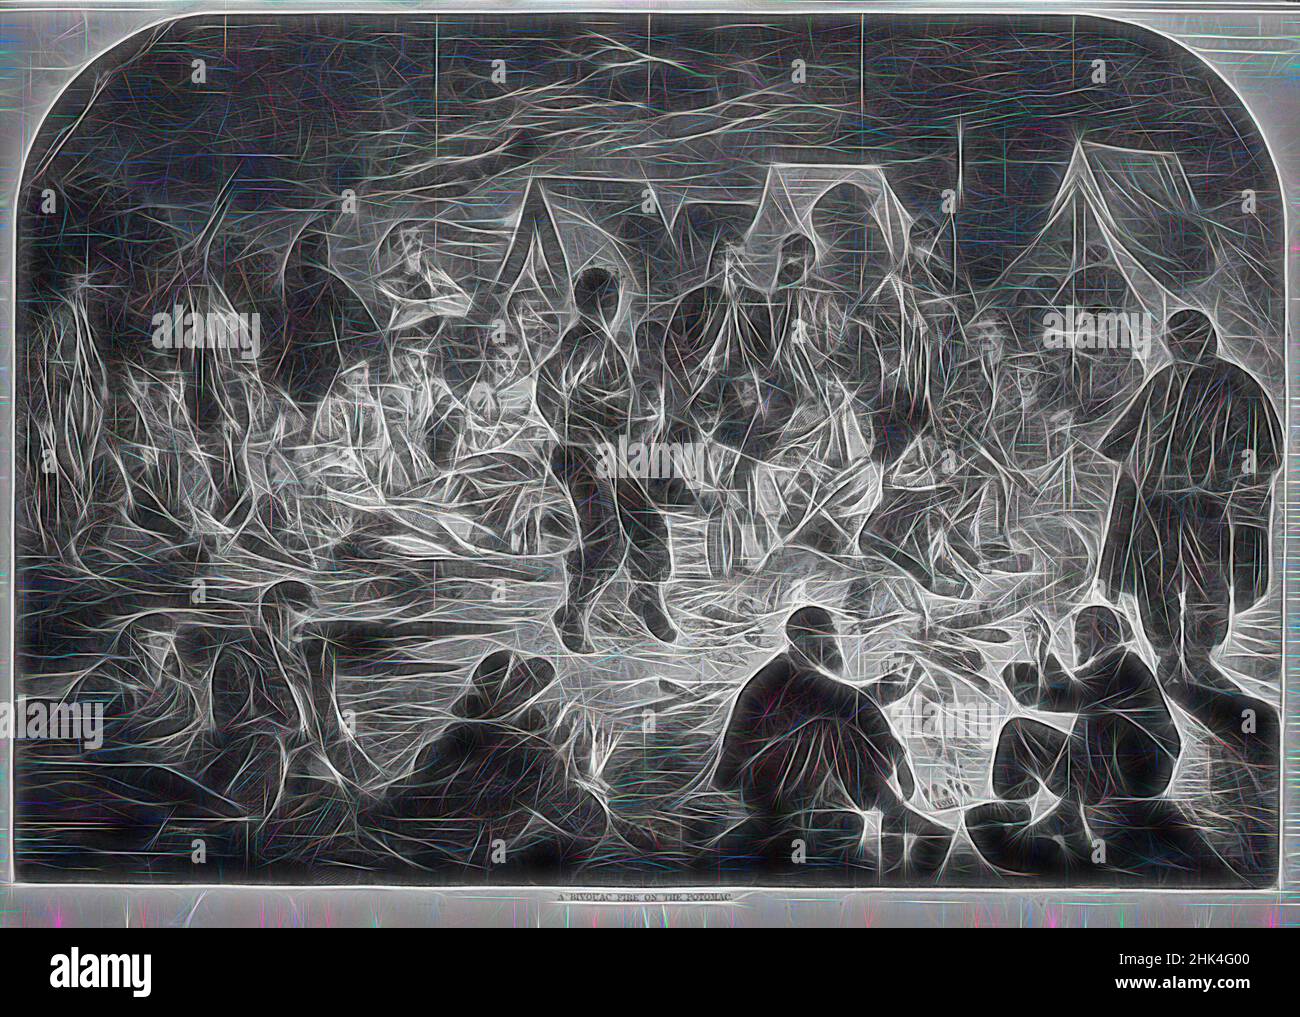 Inspiriert von Einem Biwakfeuer auf dem Potomac, Winslow Homer, Amerikaner, 1836-1910, Holzstich, 1861, Bild: 13 7/8 x 20 1/4 Zoll, 35,2 x 51,4 cm, neu gestaltet von Artotop. Klassische Kunst neu erfunden mit einem modernen Twist. Design von warmen fröhlichen Leuchten der Helligkeit und Lichtstrahl Strahlkraft. Fotografie inspiriert von Surrealismus und Futurismus, umarmt dynamische Energie der modernen Technologie, Bewegung, Geschwindigkeit und Kultur zu revolutionieren Stockfoto